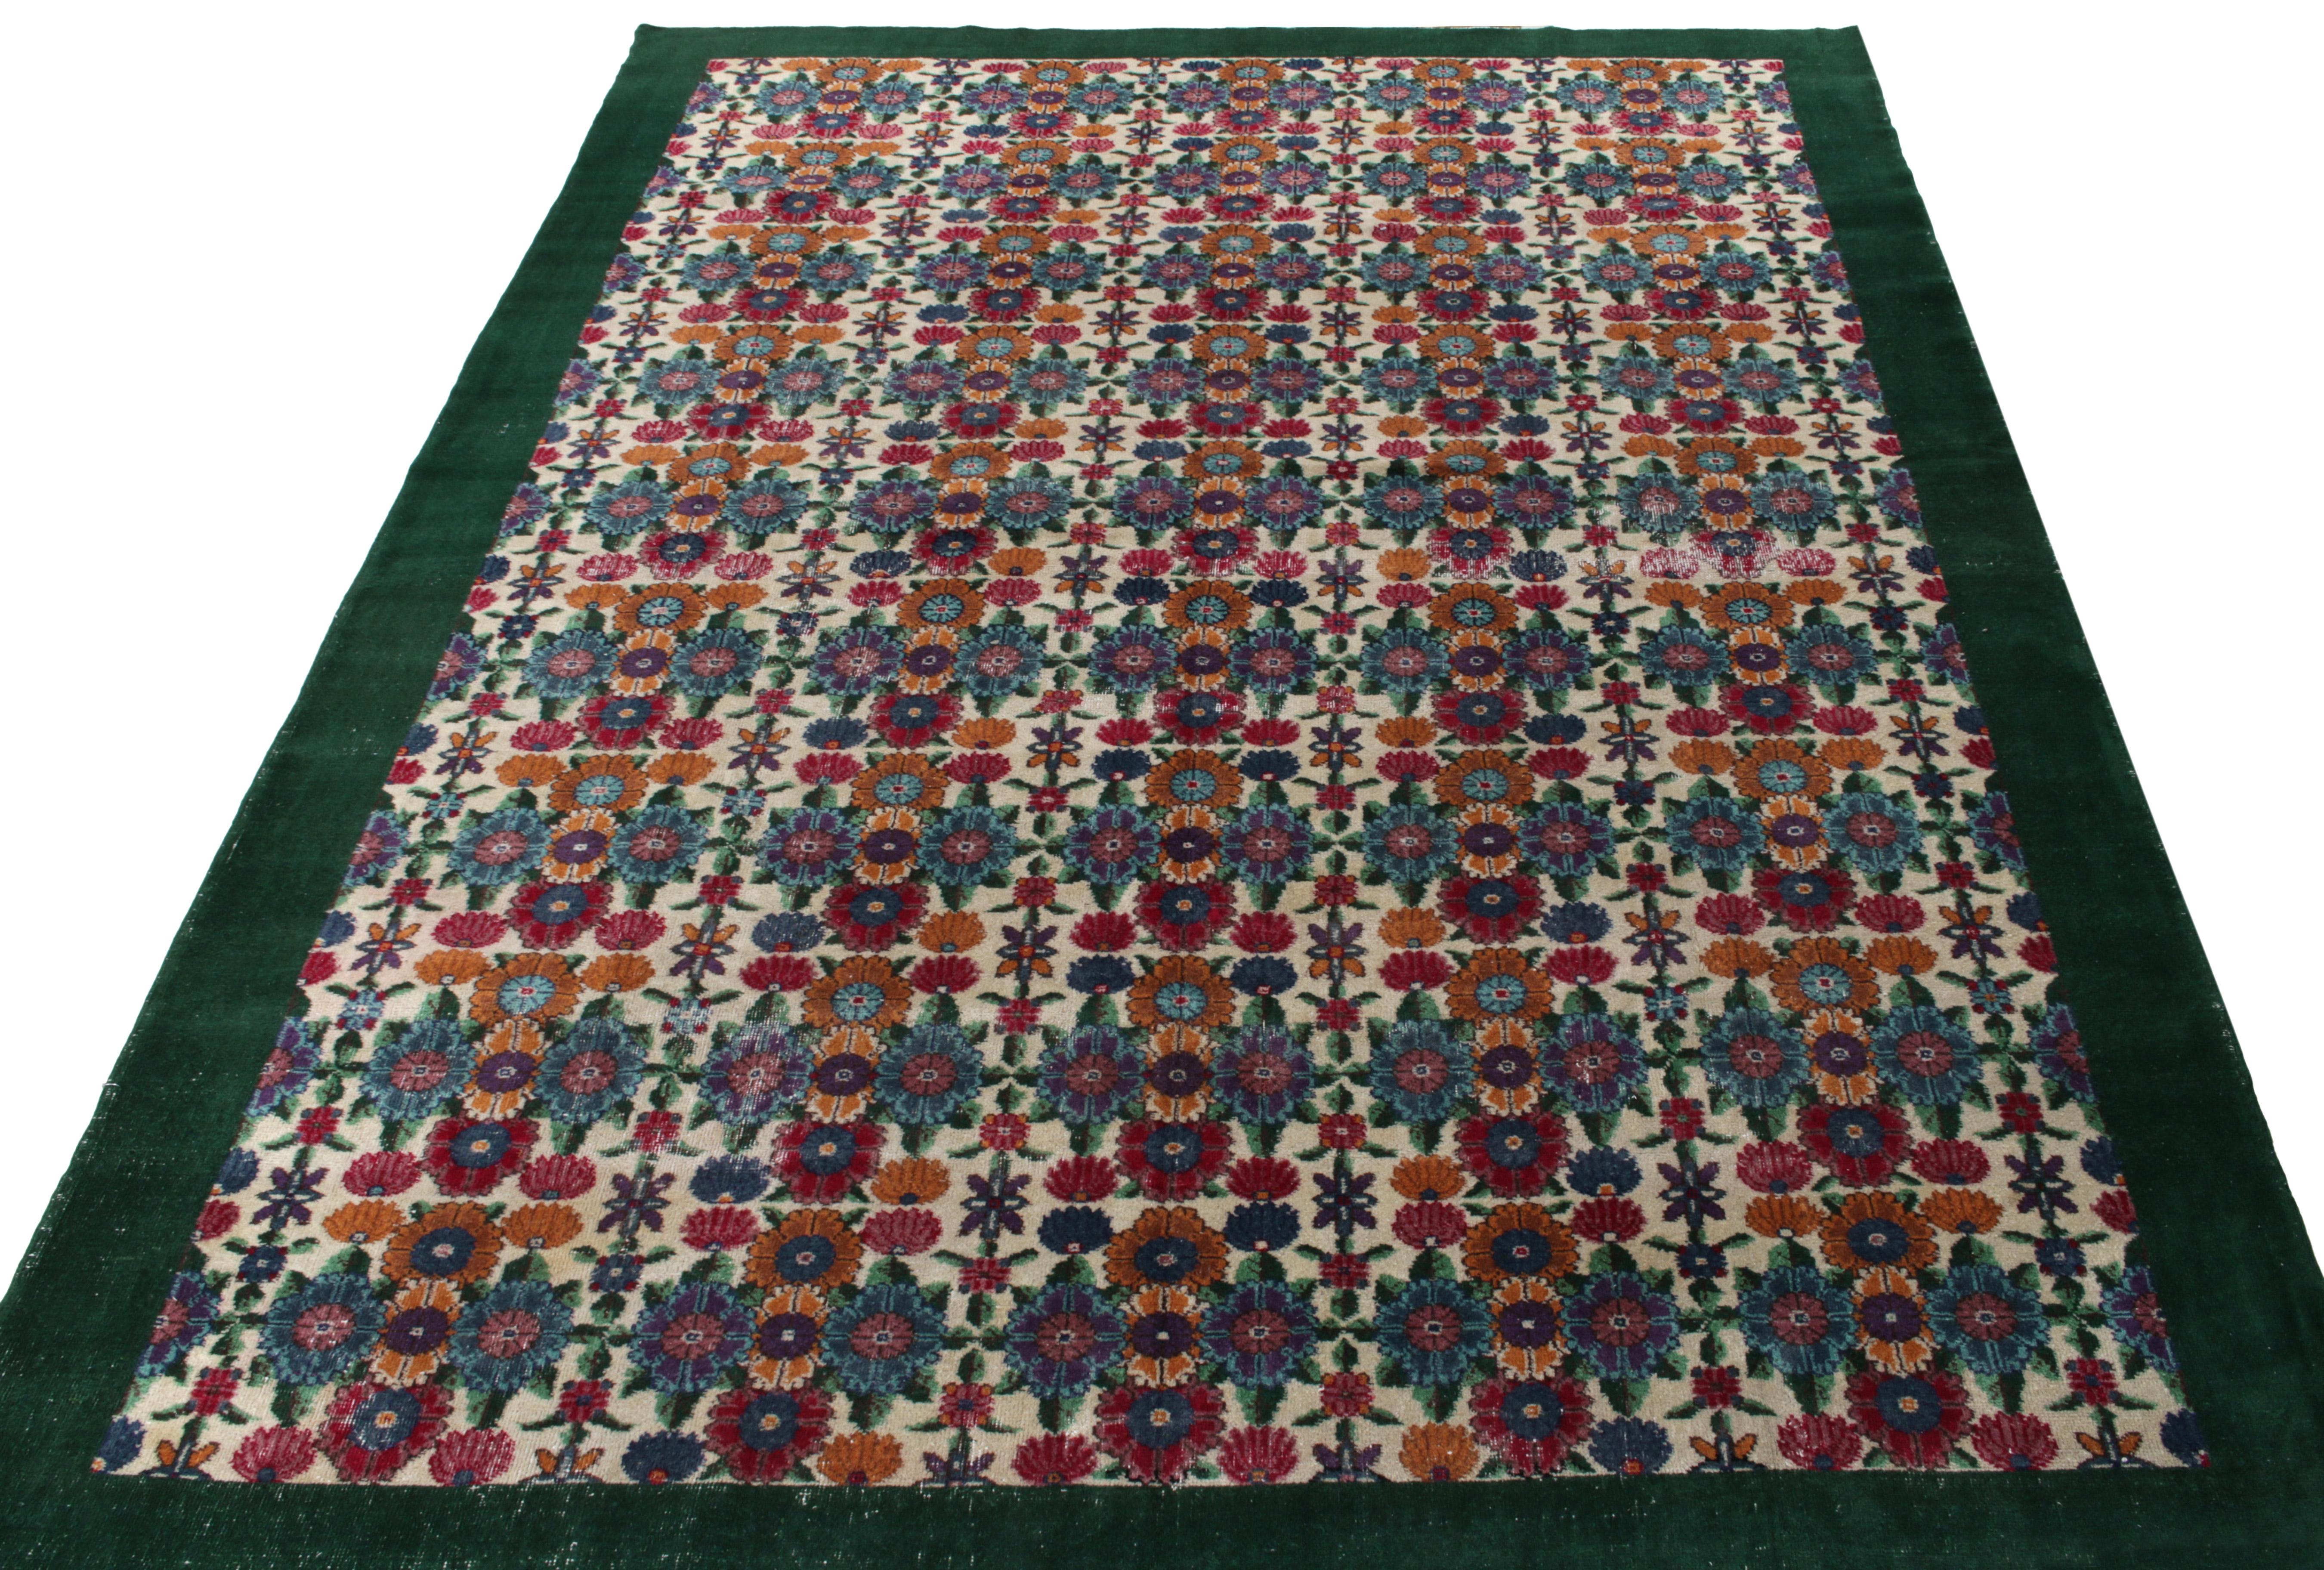 Dieser 8 x 12 große Vintage-Teppich aus der Mitte des Jahrhunderts stammt aus der Türkei (ca. 1960-1970) und zeigt ein wunderschönes Blumenmuster in Aquablau, Goldorange und Kastanienbraun, das liebevoll in eine tiefgrüne Bordüre eingefasst ist. Aus